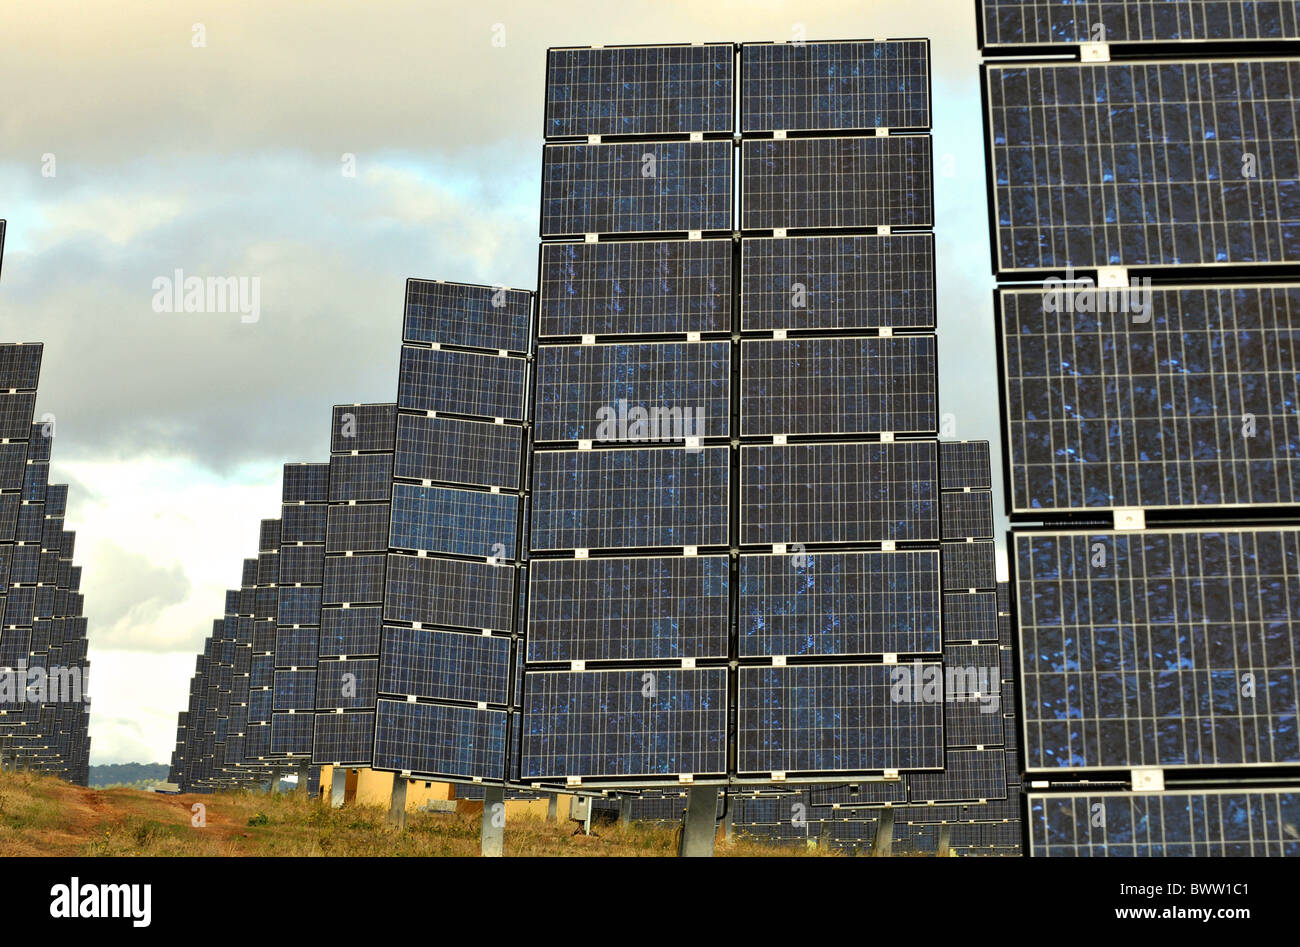 Granja de energía solar, la energía solar park complex en Los Arcos, Navarra, España Foto de stock